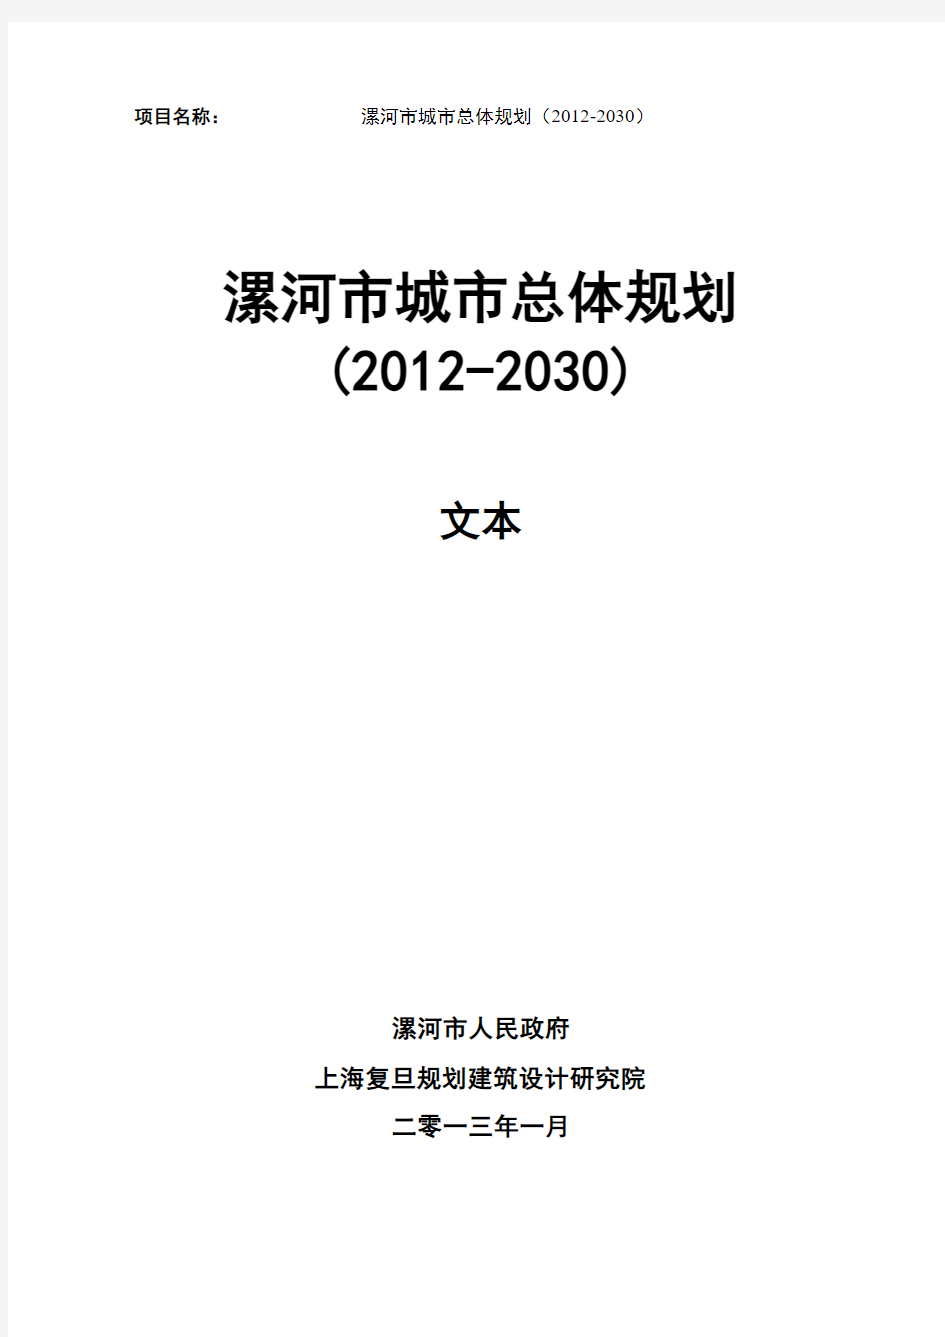 漯河市城市总体规划(2012-2030)第1-3章